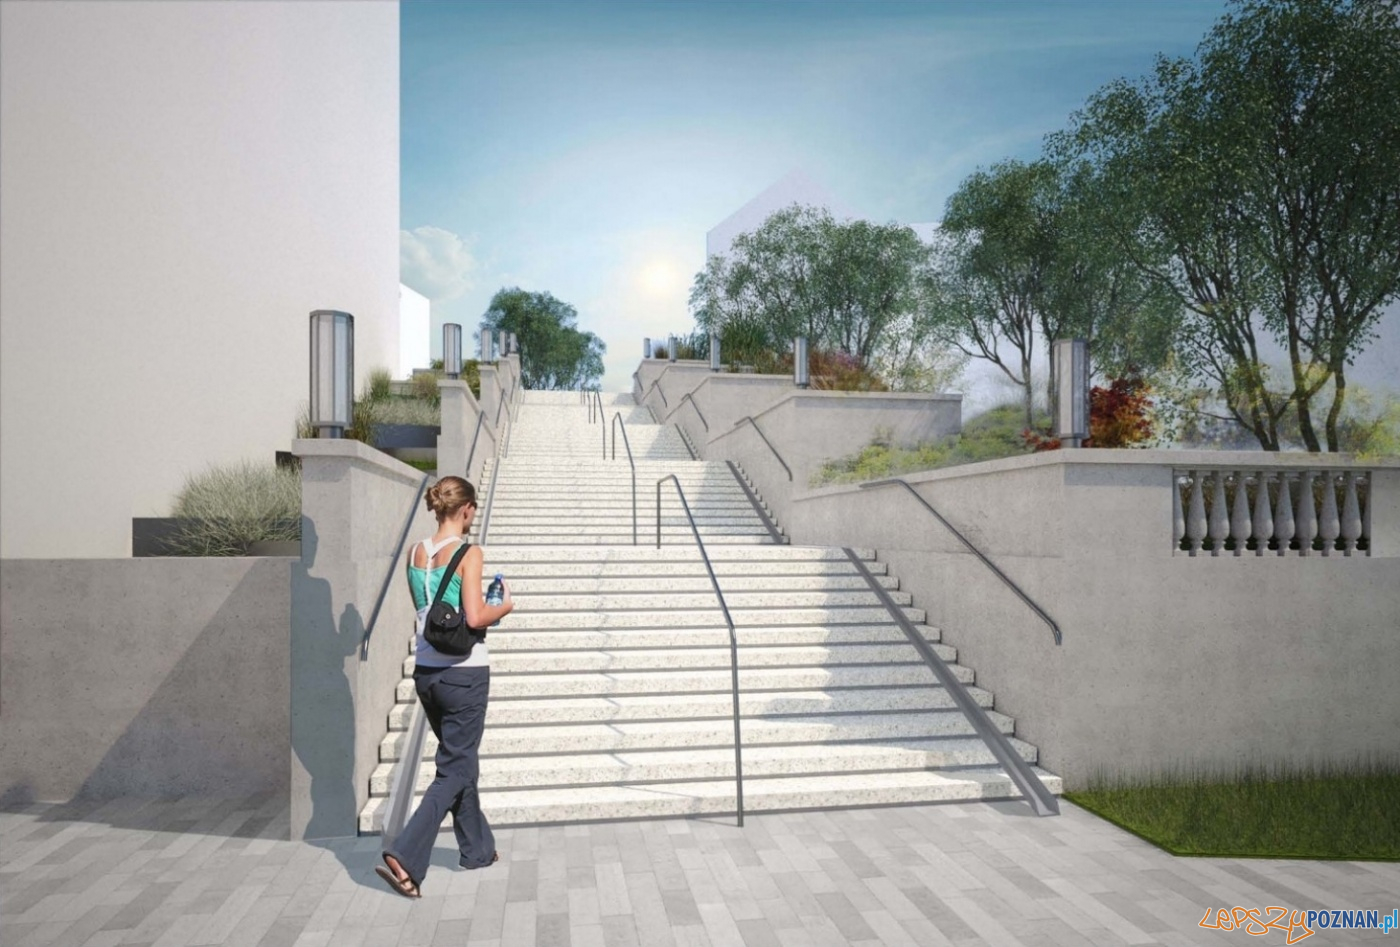 Projekt odbudowy schodów na Wildzie  Foto: materiały prasowe / PIM